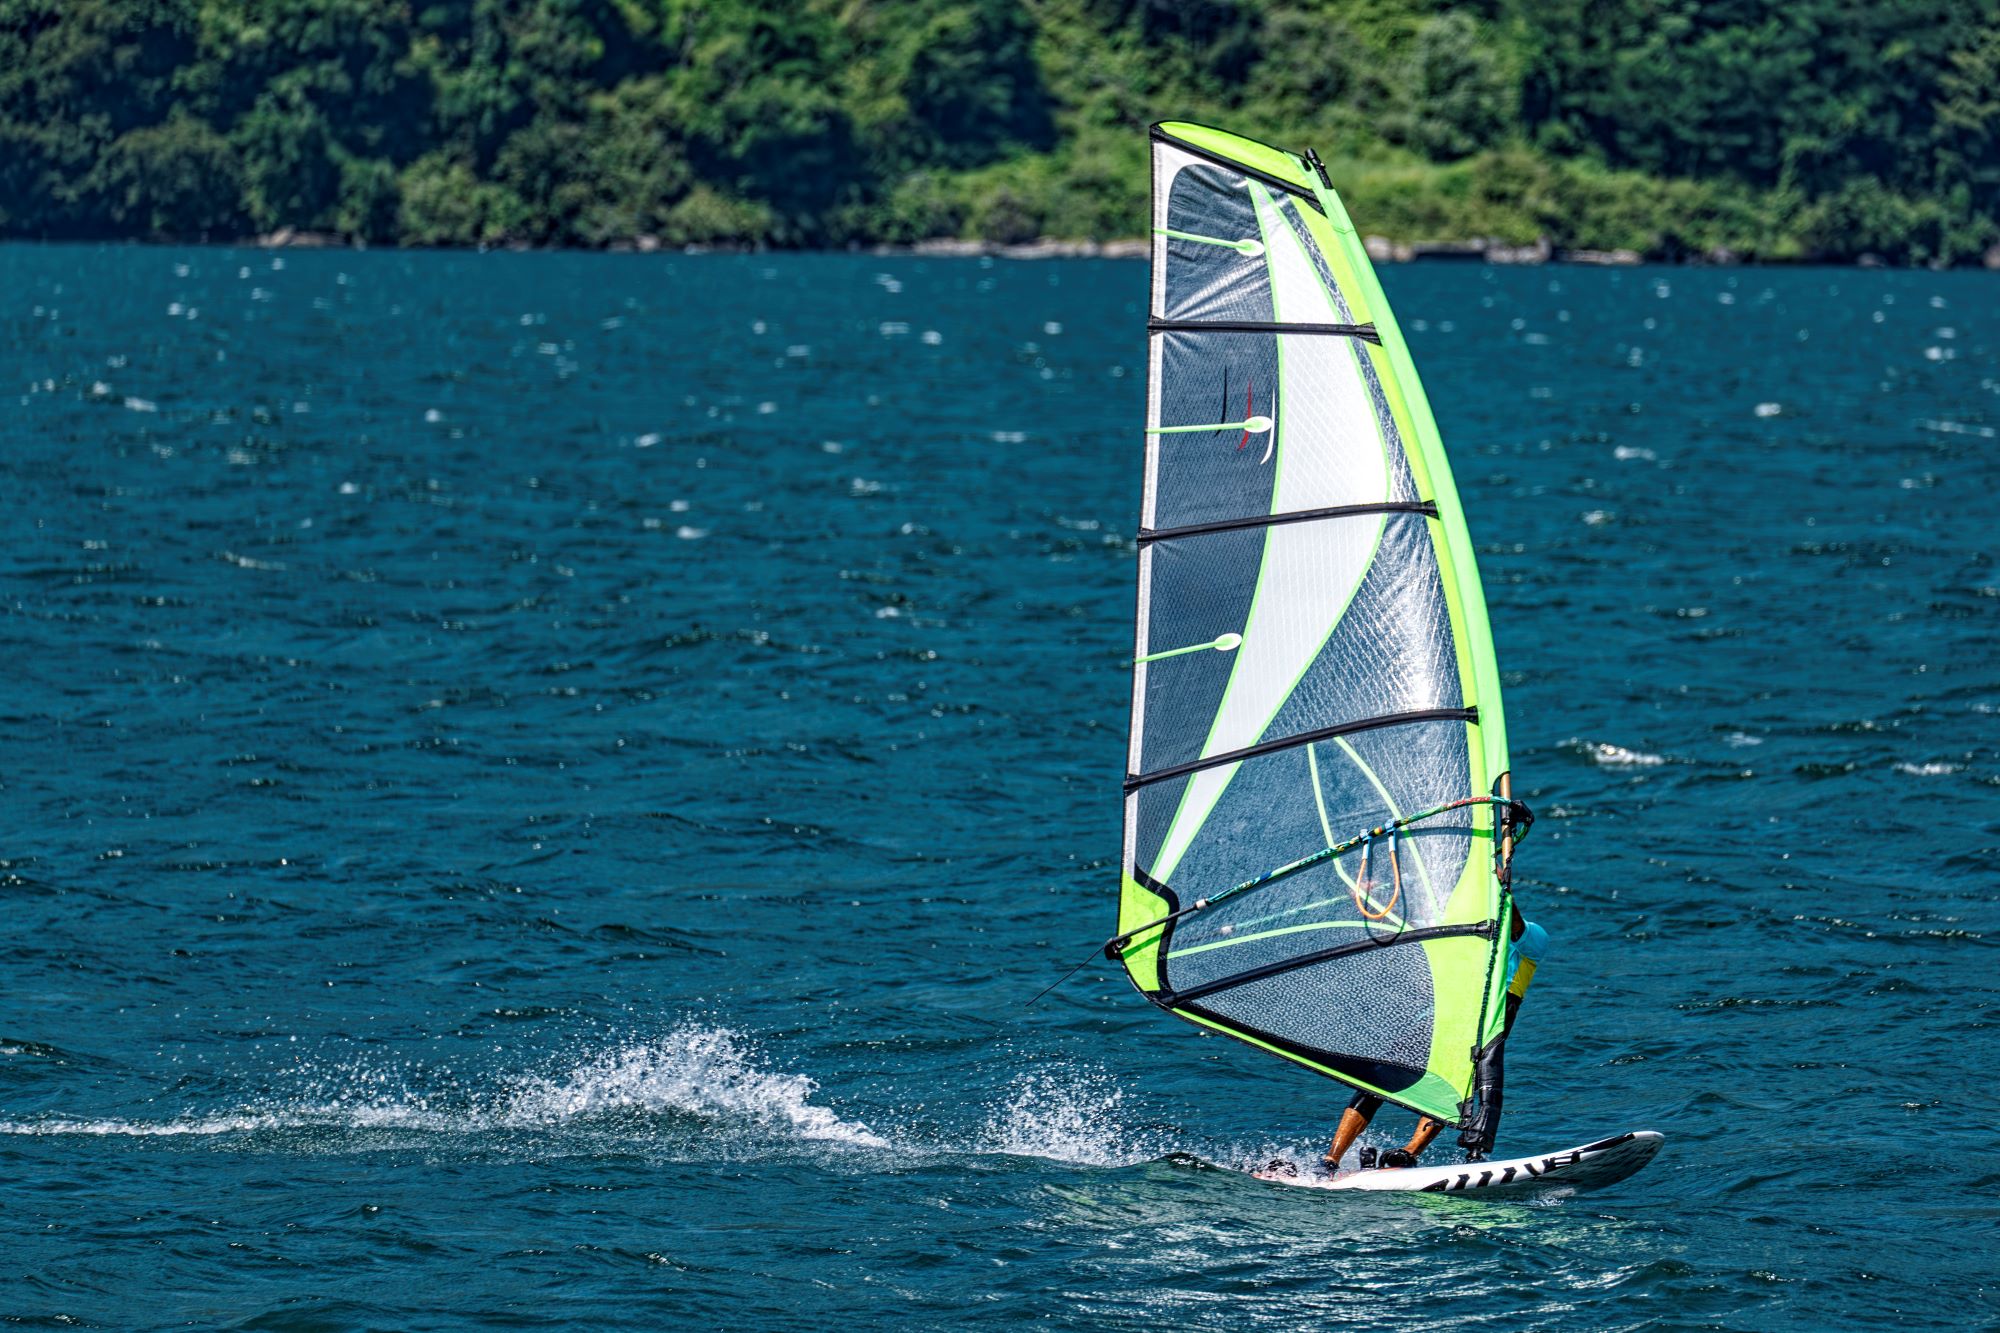 Emozionante windsurf a Torbole sul Garda, con vento e onde perfette per avventure in acqua indimenticabili